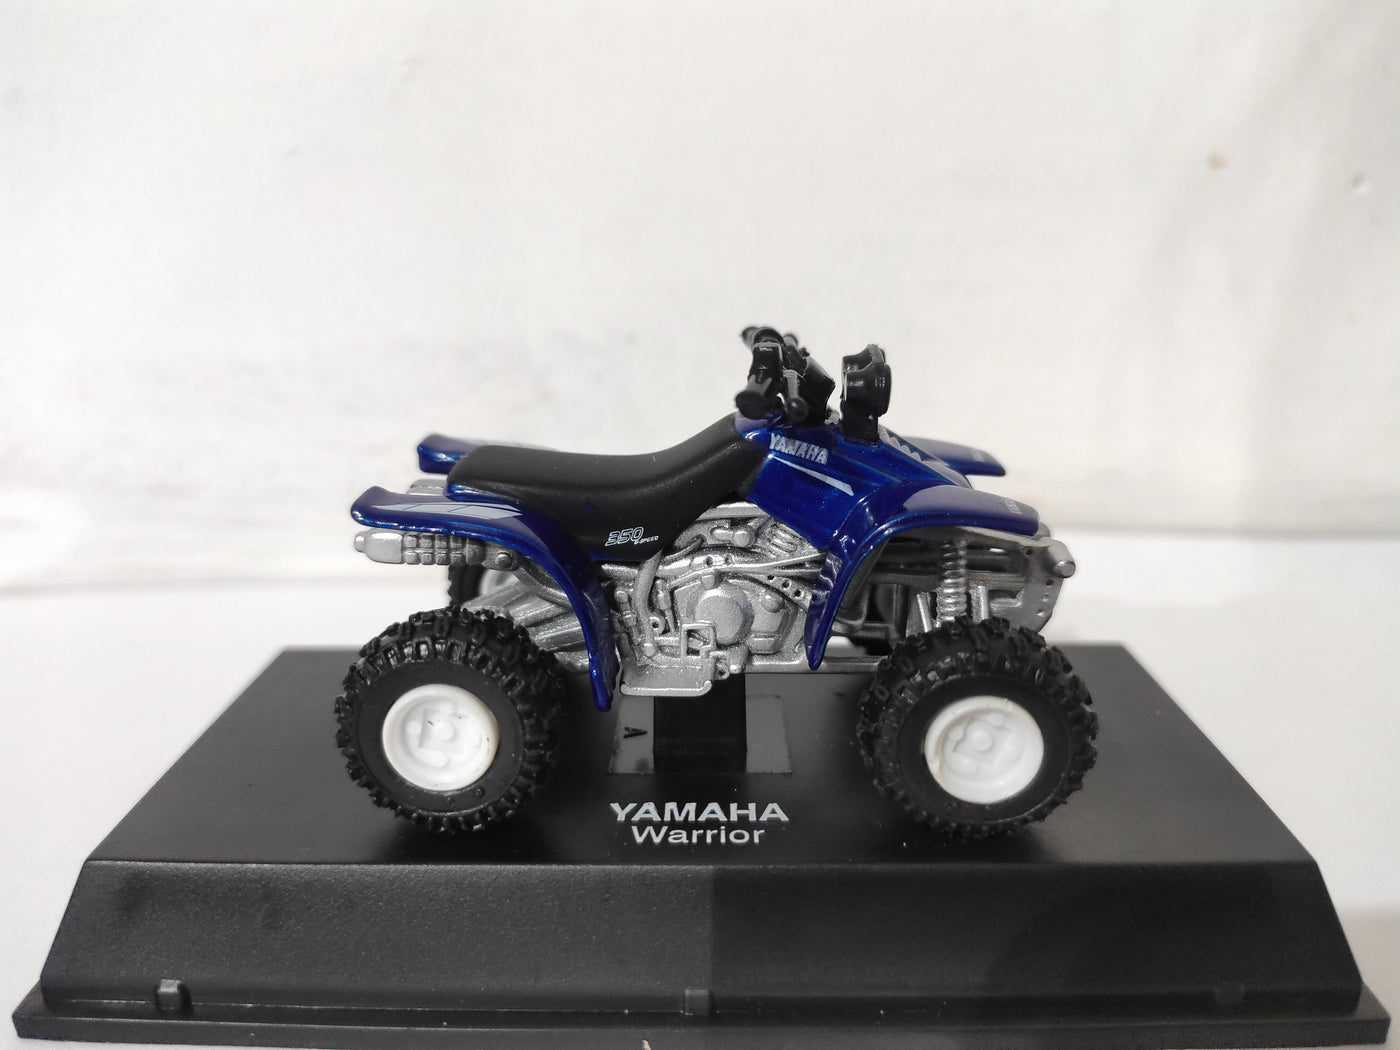 New Ray Toys 1:32 Yamaha Warrior